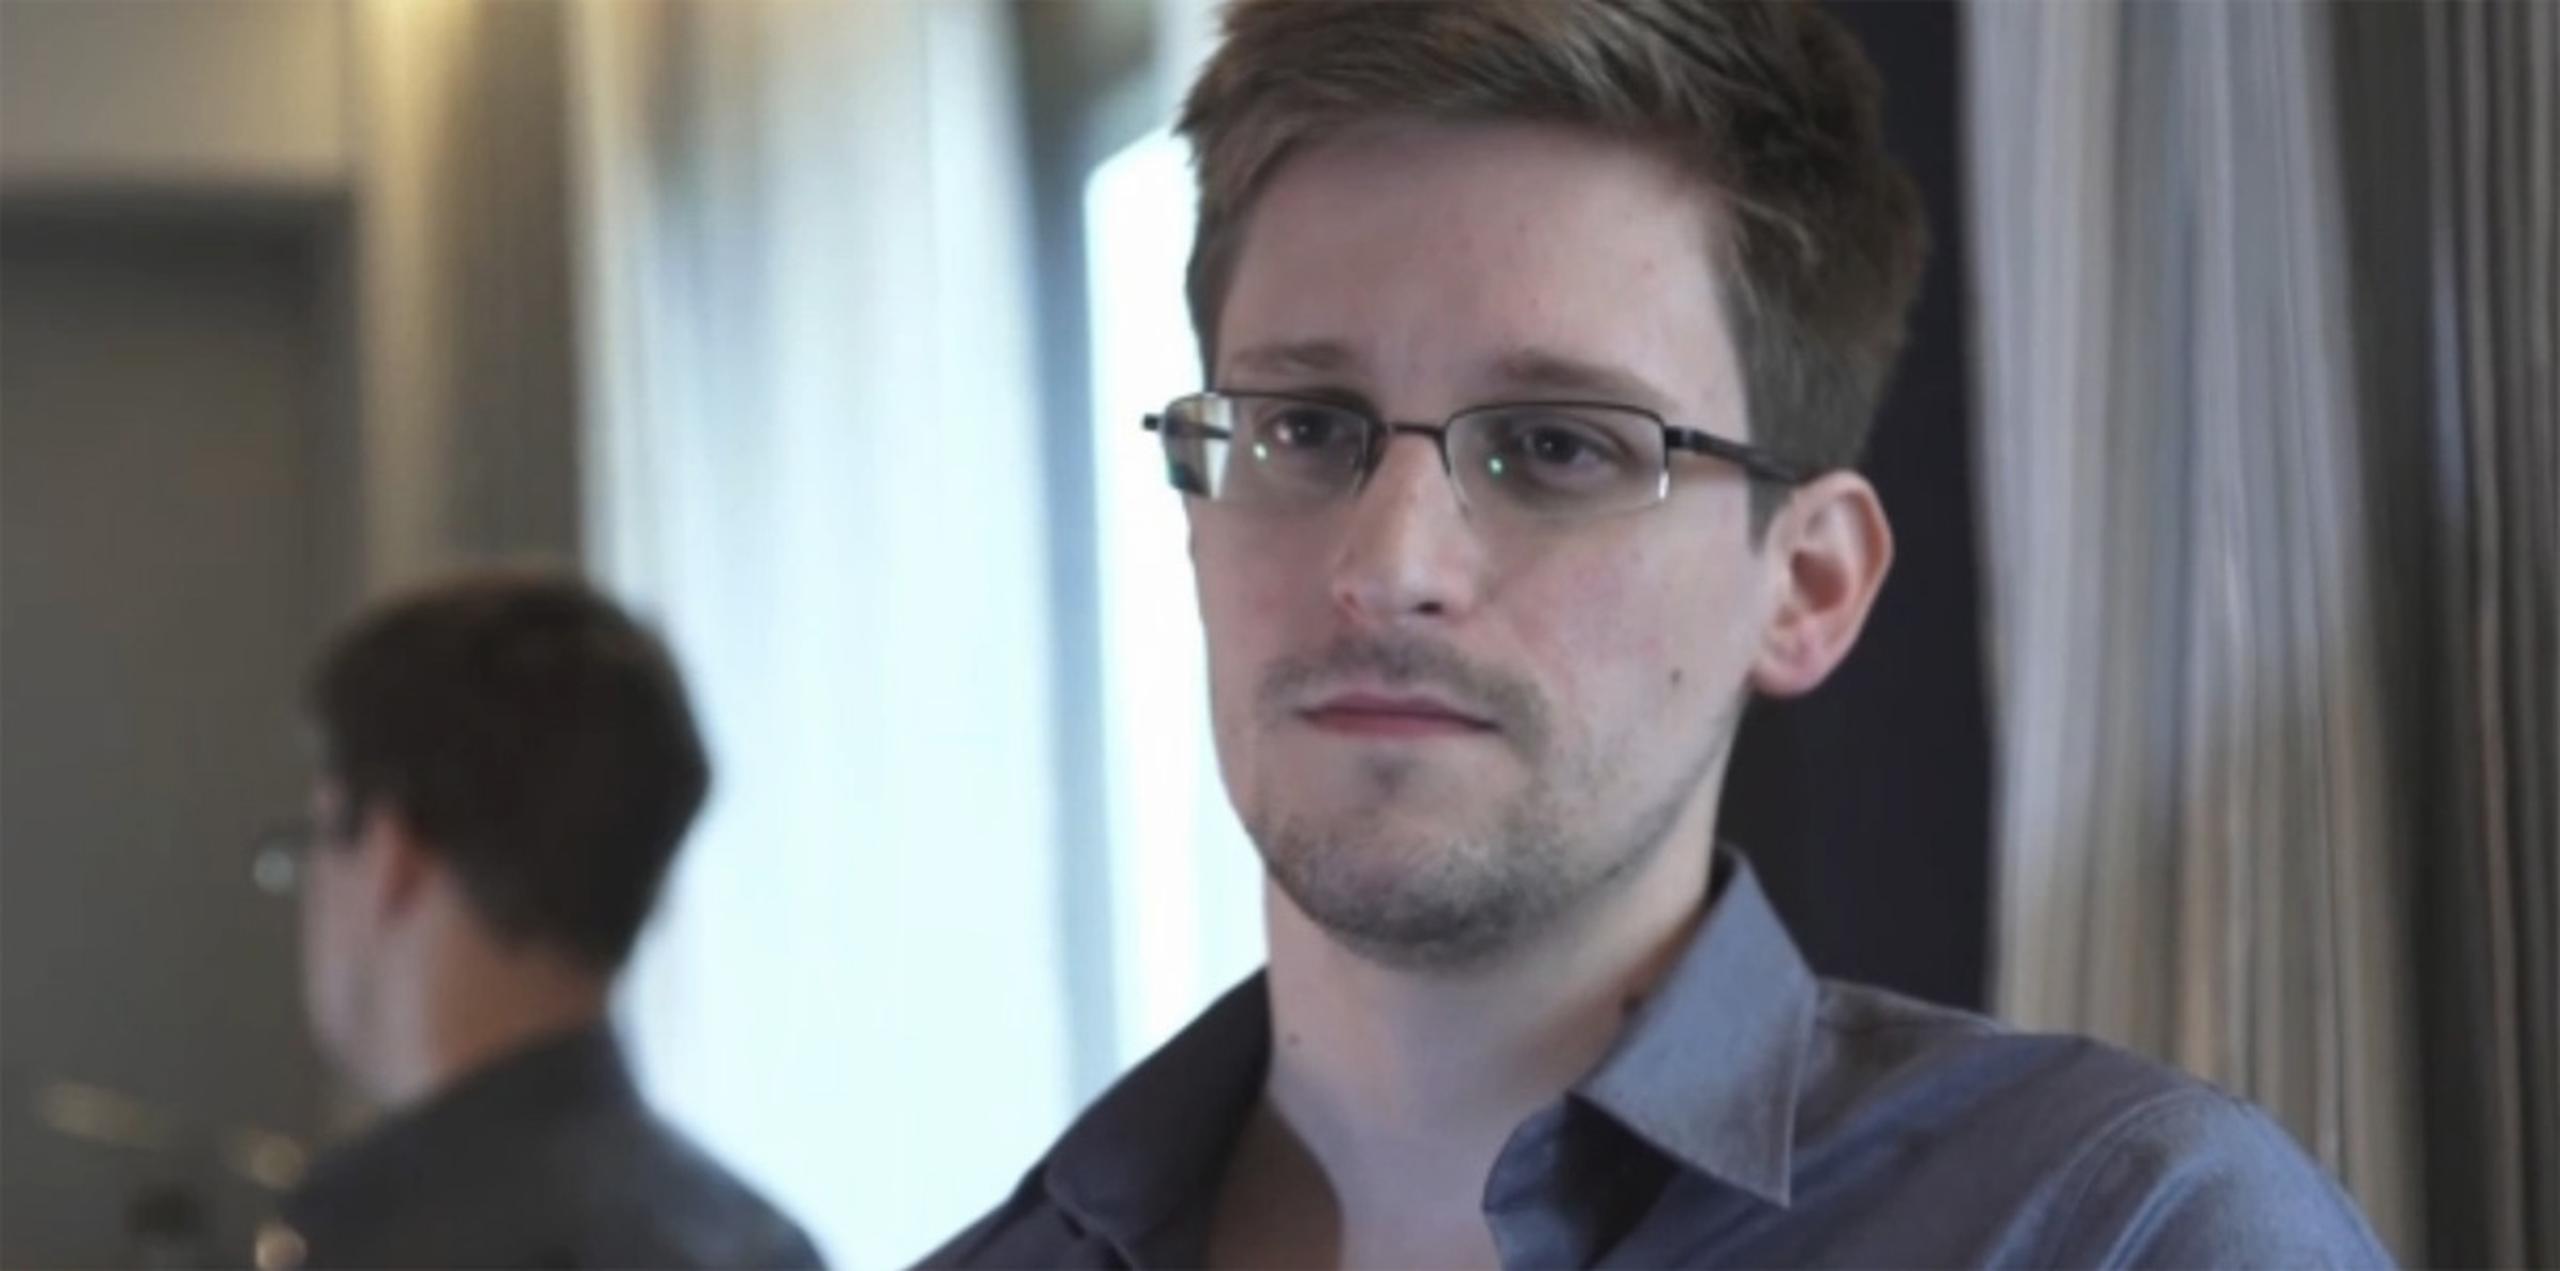 Snowden vive en Rusia desde 2013, cuando se quedó varado en la zona de tránsito en un aeropuerto de Moscú después de que Estados Unidos cancelara su pasaporte.